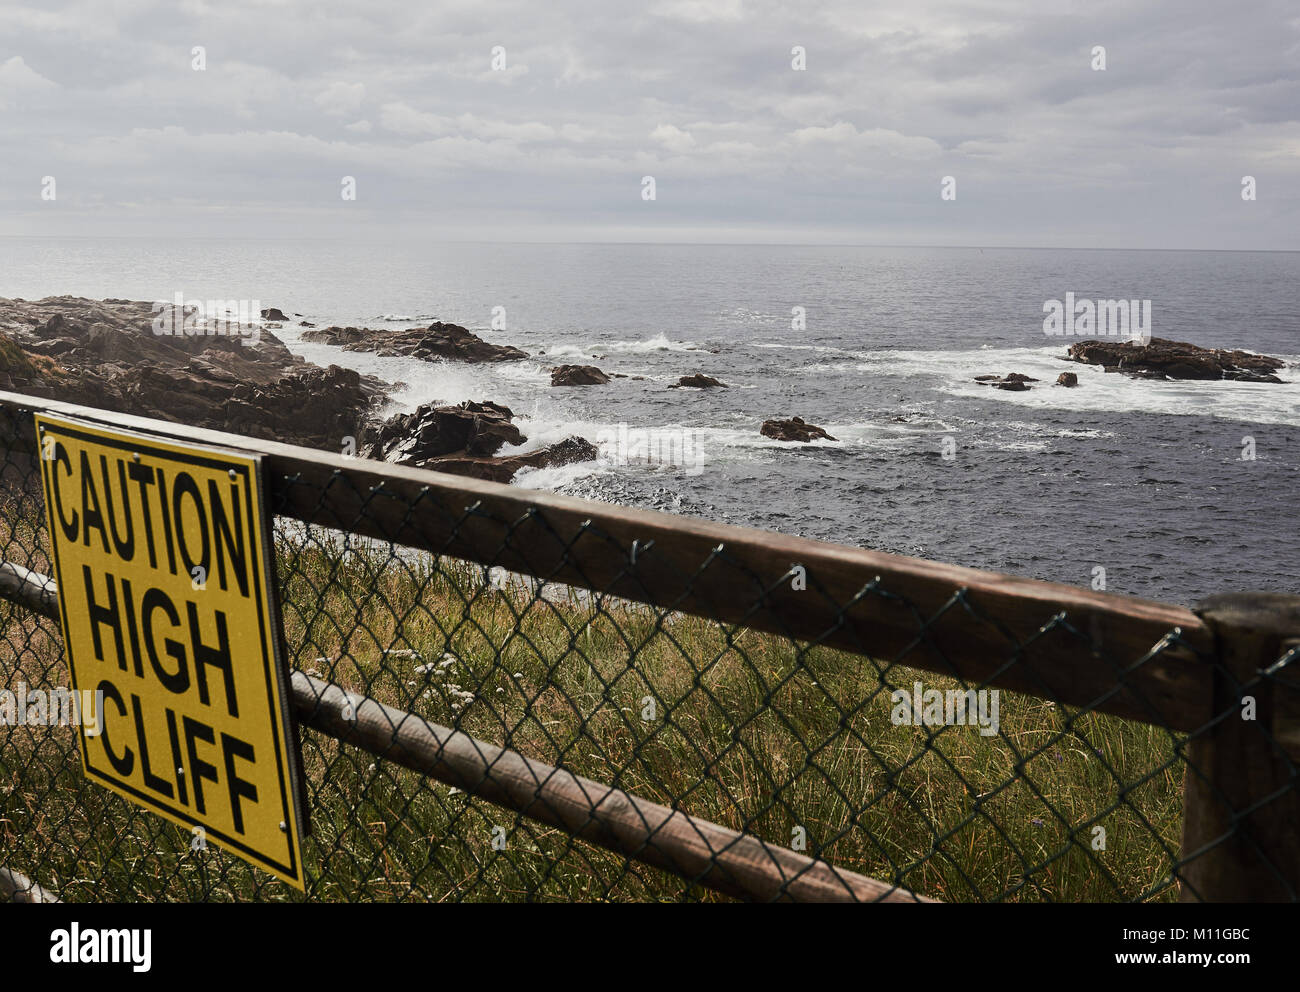 Vorsicht hohe Klippe Warnschild, Cape Breton Island, Nova Scotia, Kanada Stockfoto